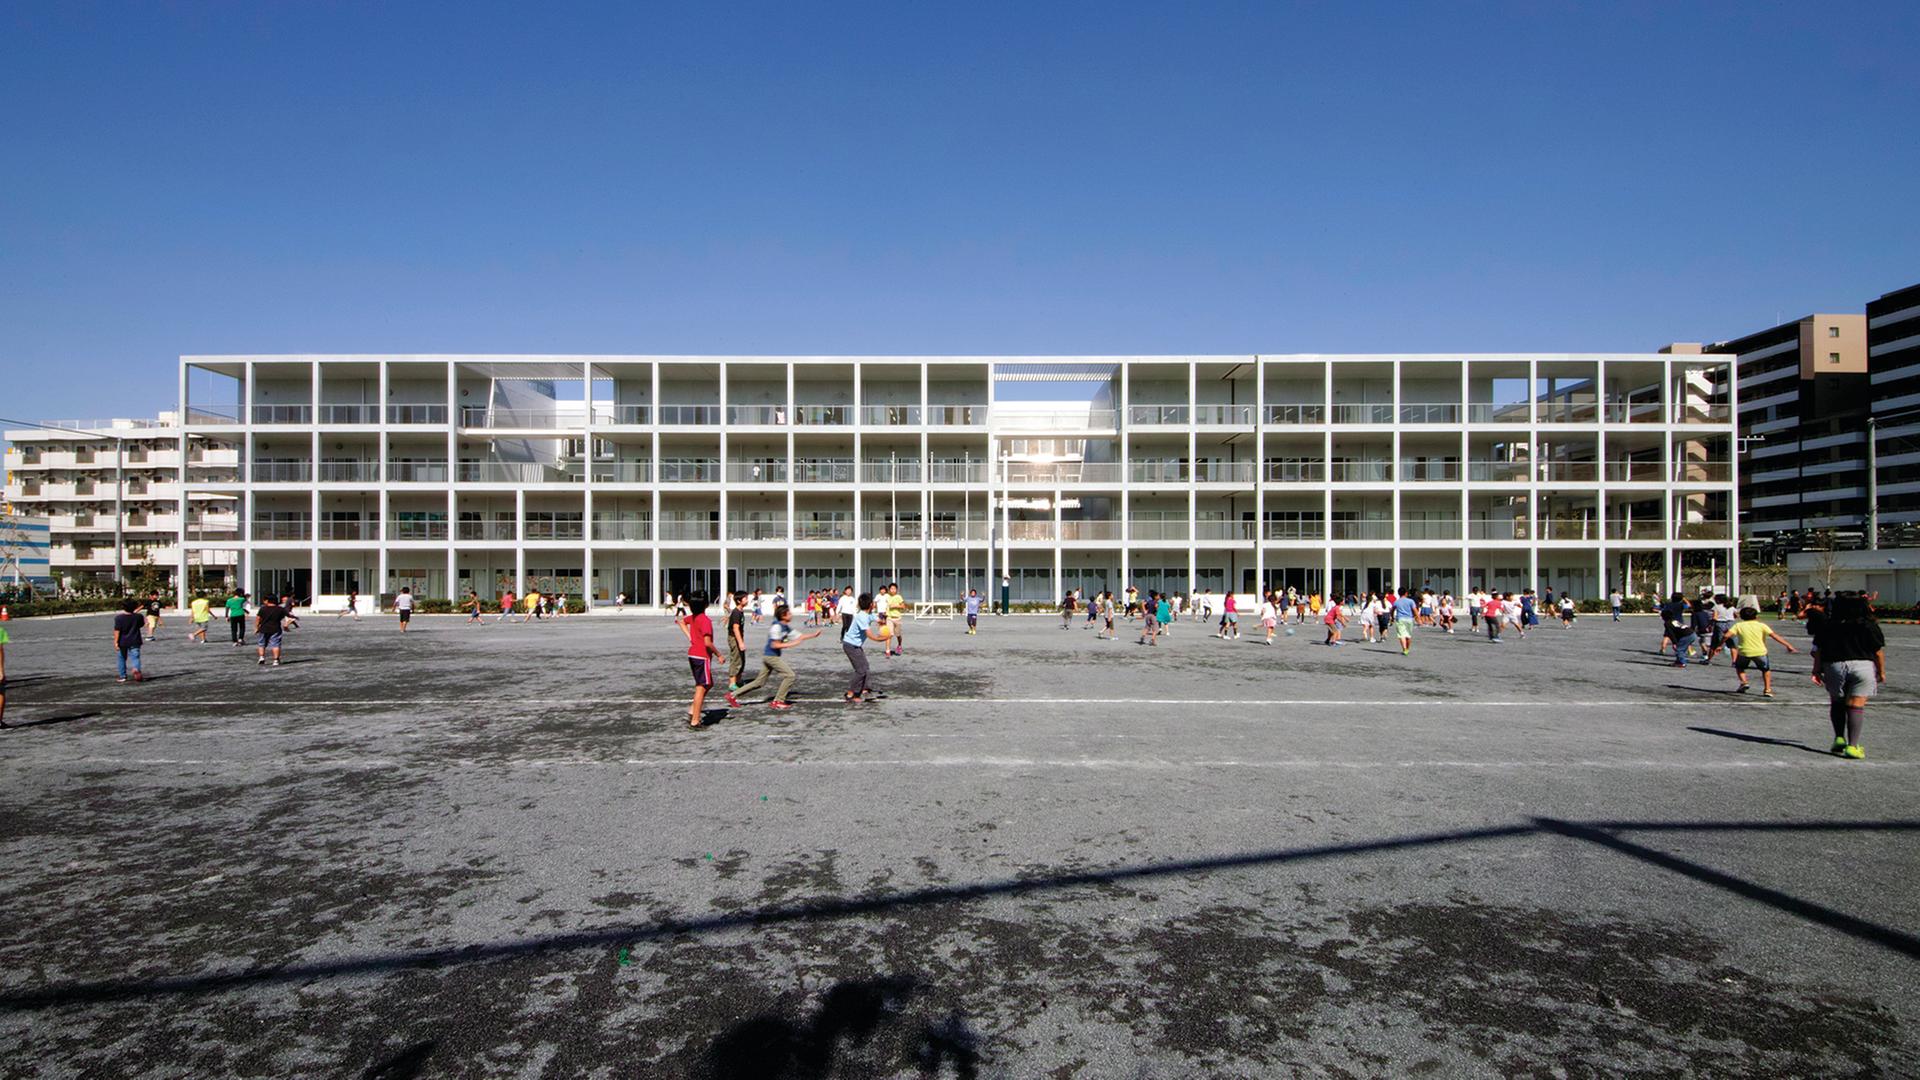 Ein fast gläsernes Gebäude, eine Schule, von dem japanischen Architekten Riken Yamamoto gesignt. Davor laufen viele Kinder.